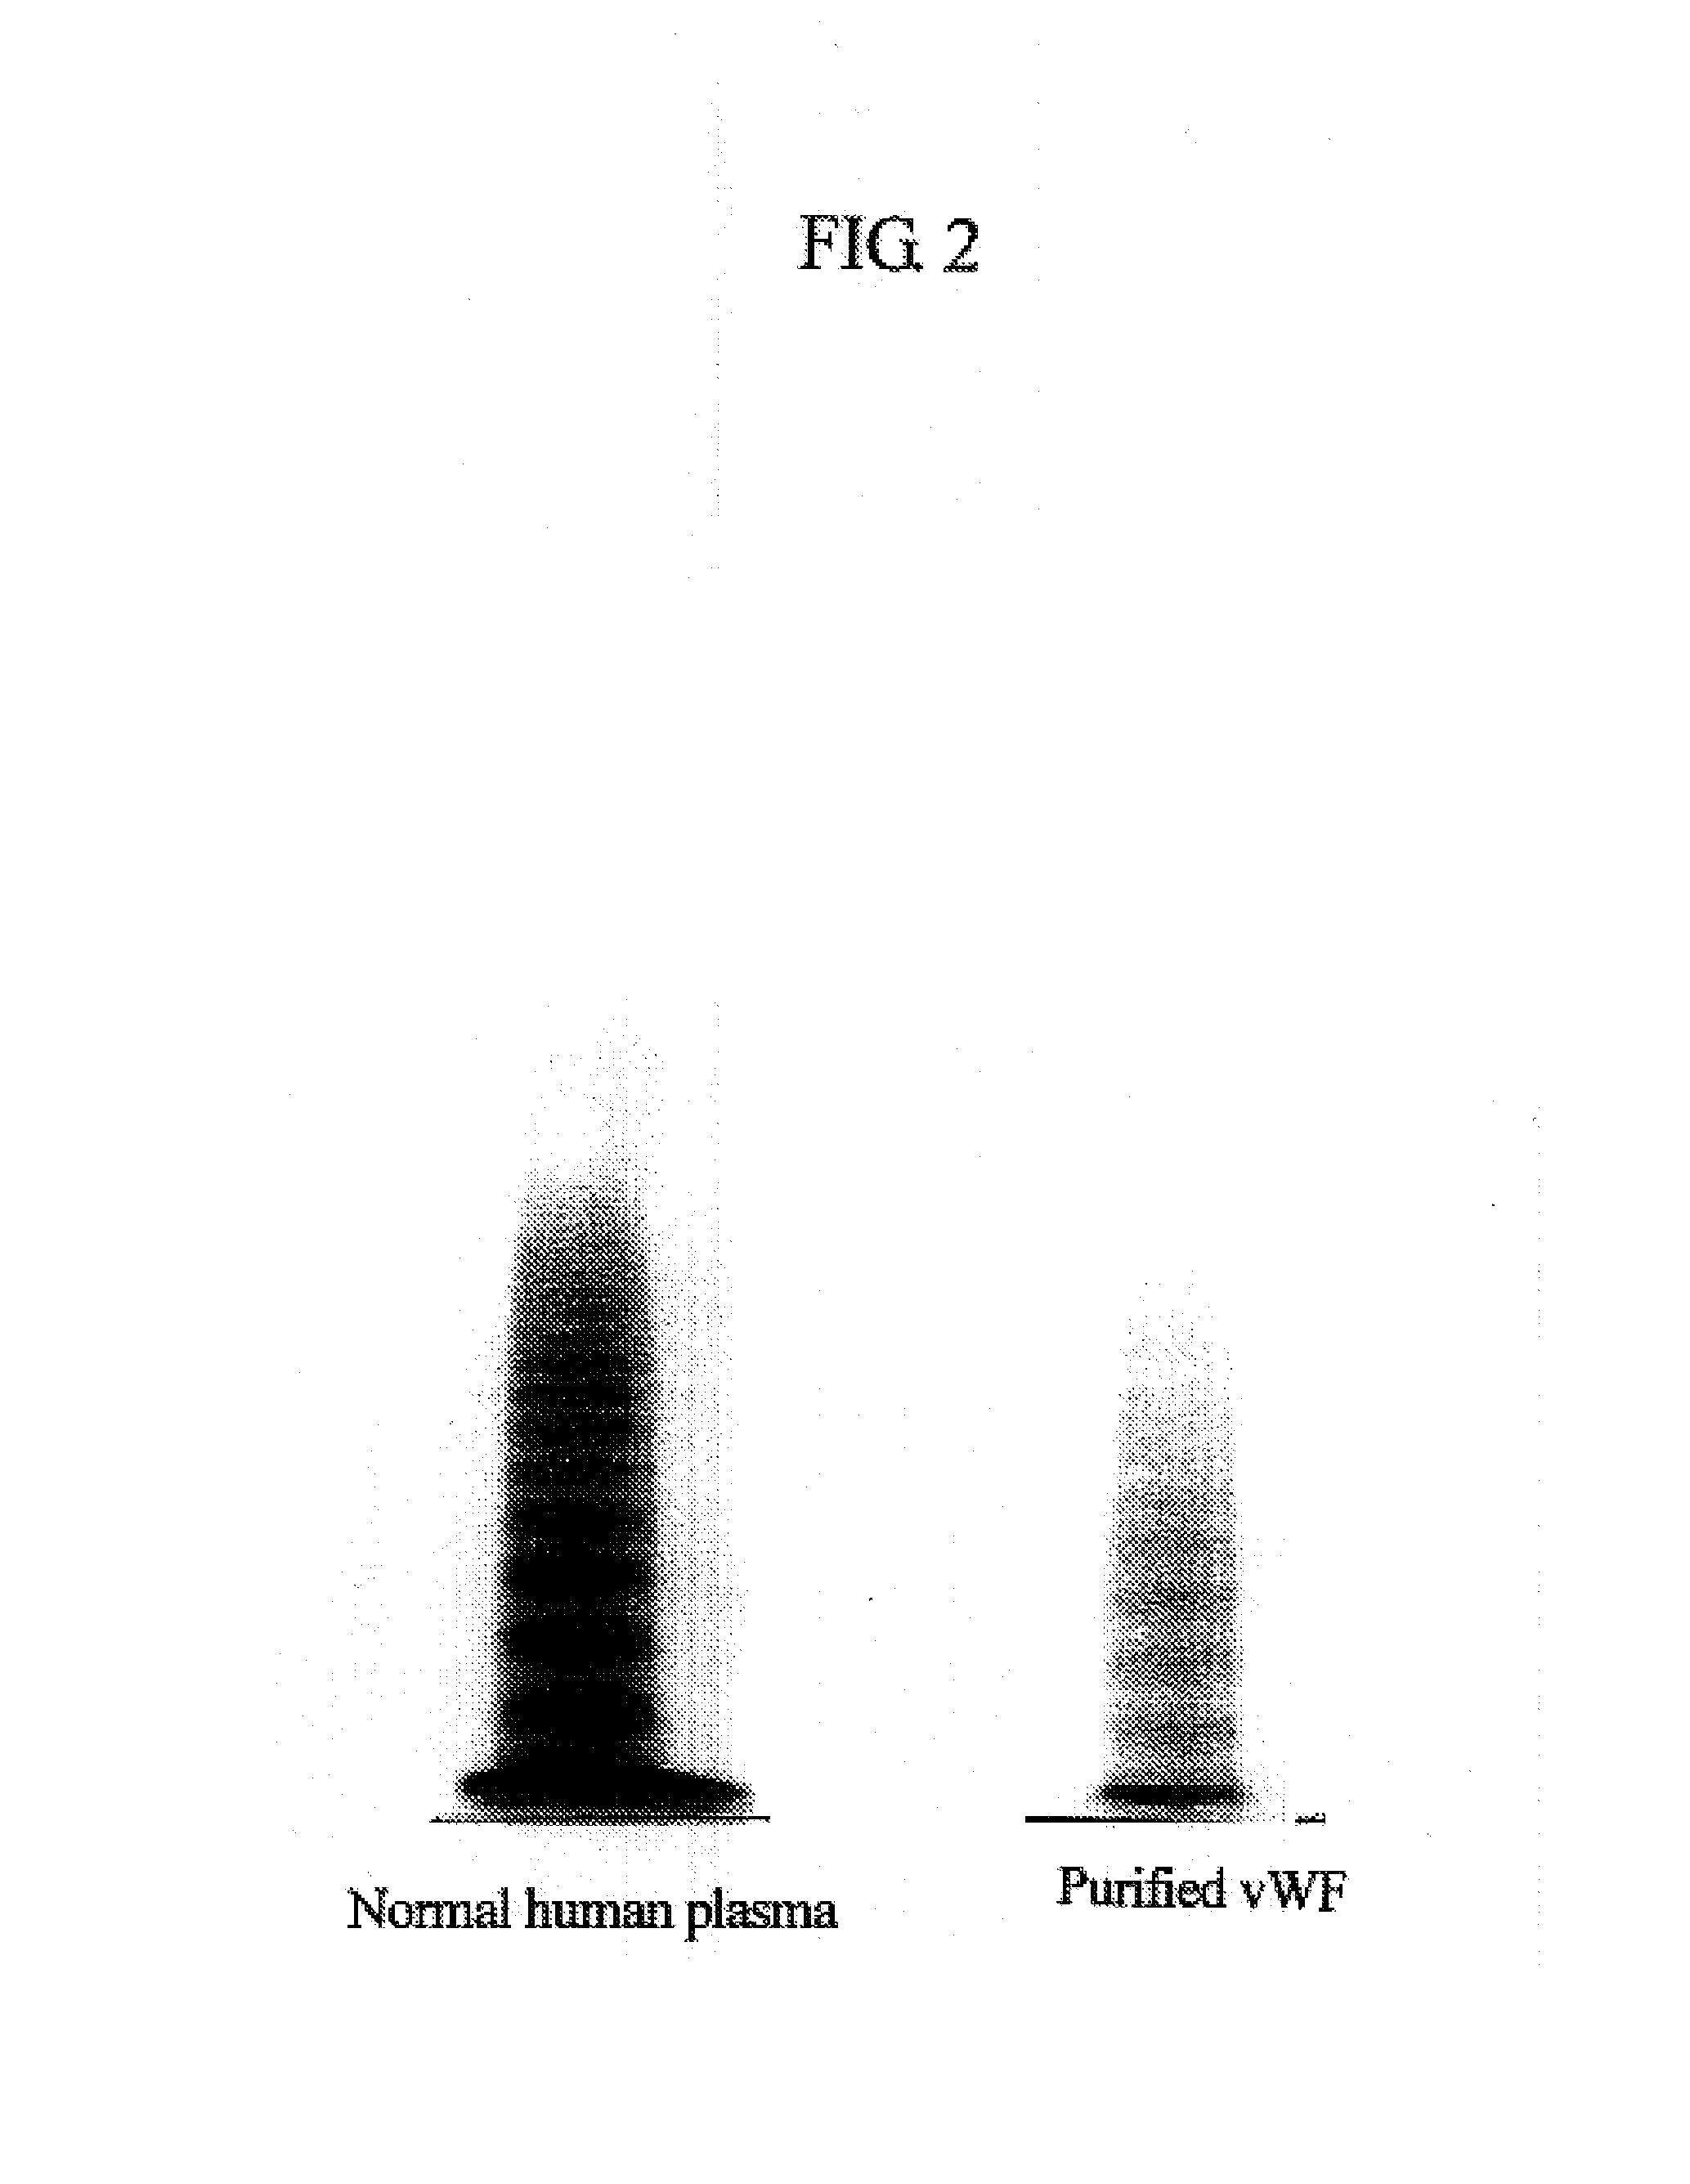 Von Willebrand Factor (Vwf)-cleaving protease